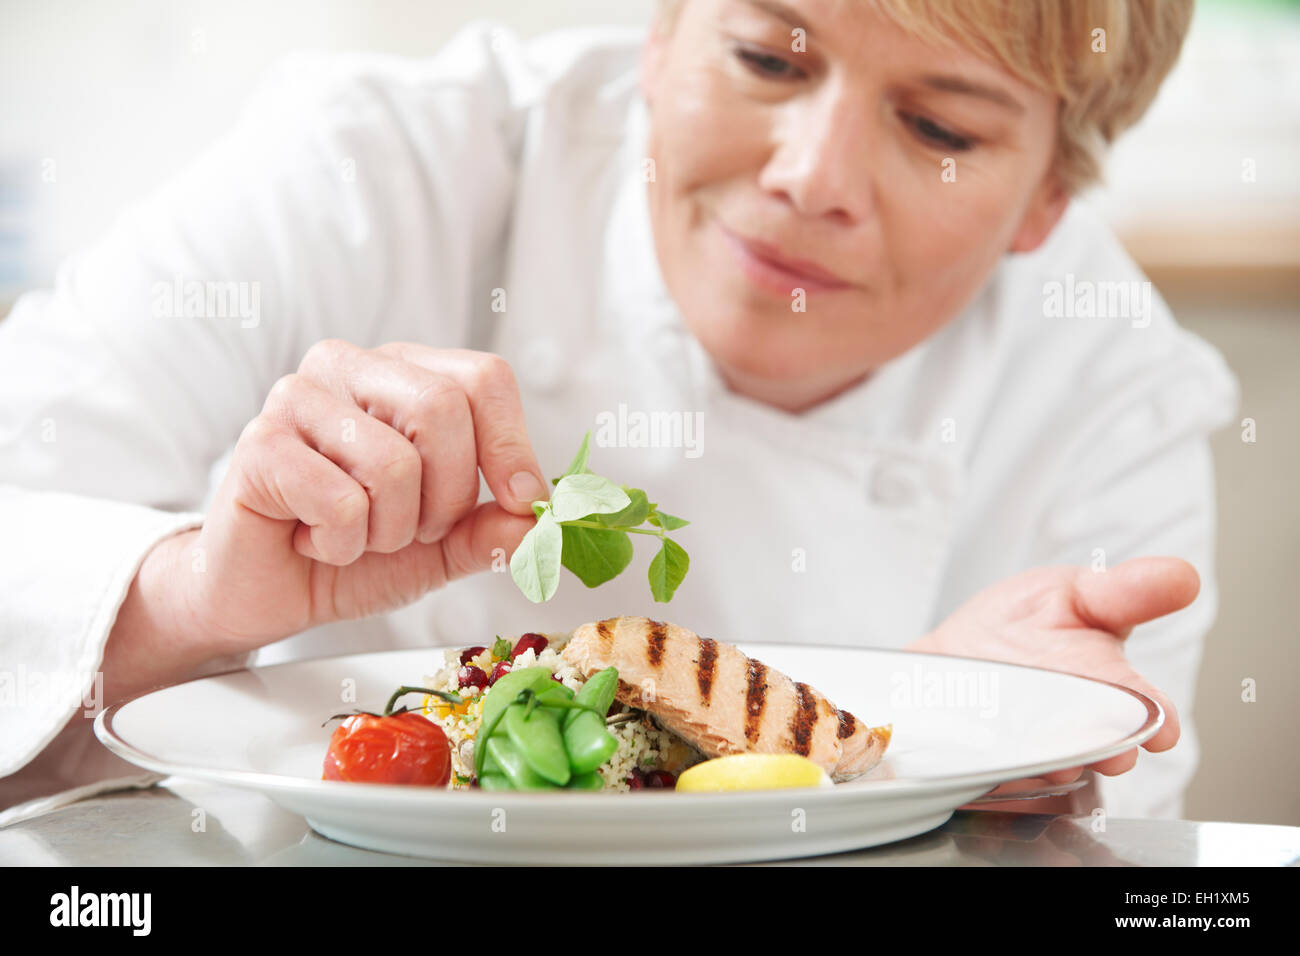 Koch, Essen im Restaurant Küche Garnitur hinzufügen Stockfotografie - Alamy